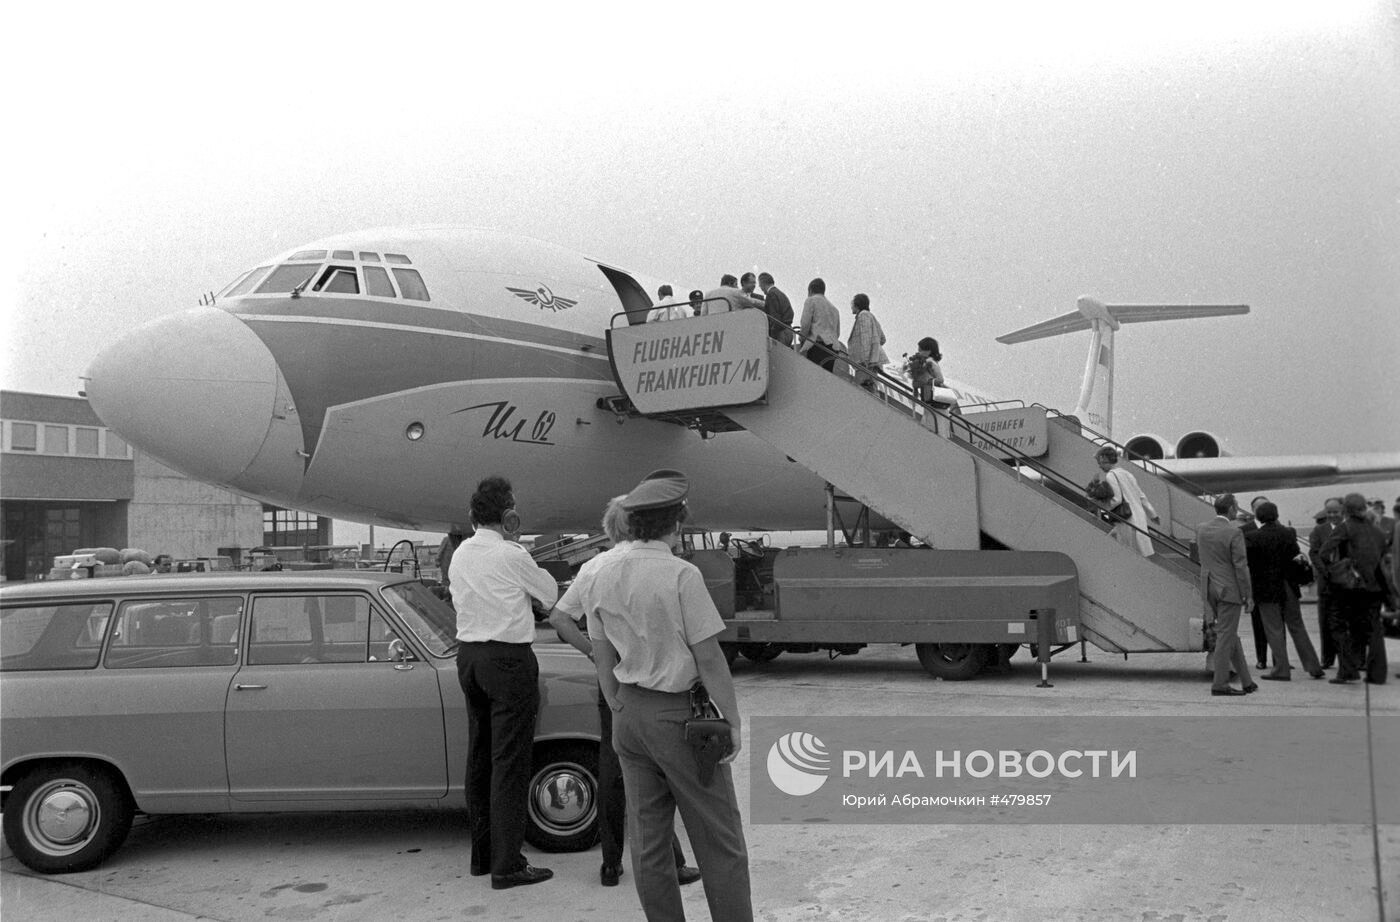 Аэропорт Франкфурт-на-Майне самолет «Ил-62»  СССР-86690 рейс Франкфурт-на-Майне-Москва-Токио июнь 1973 г.